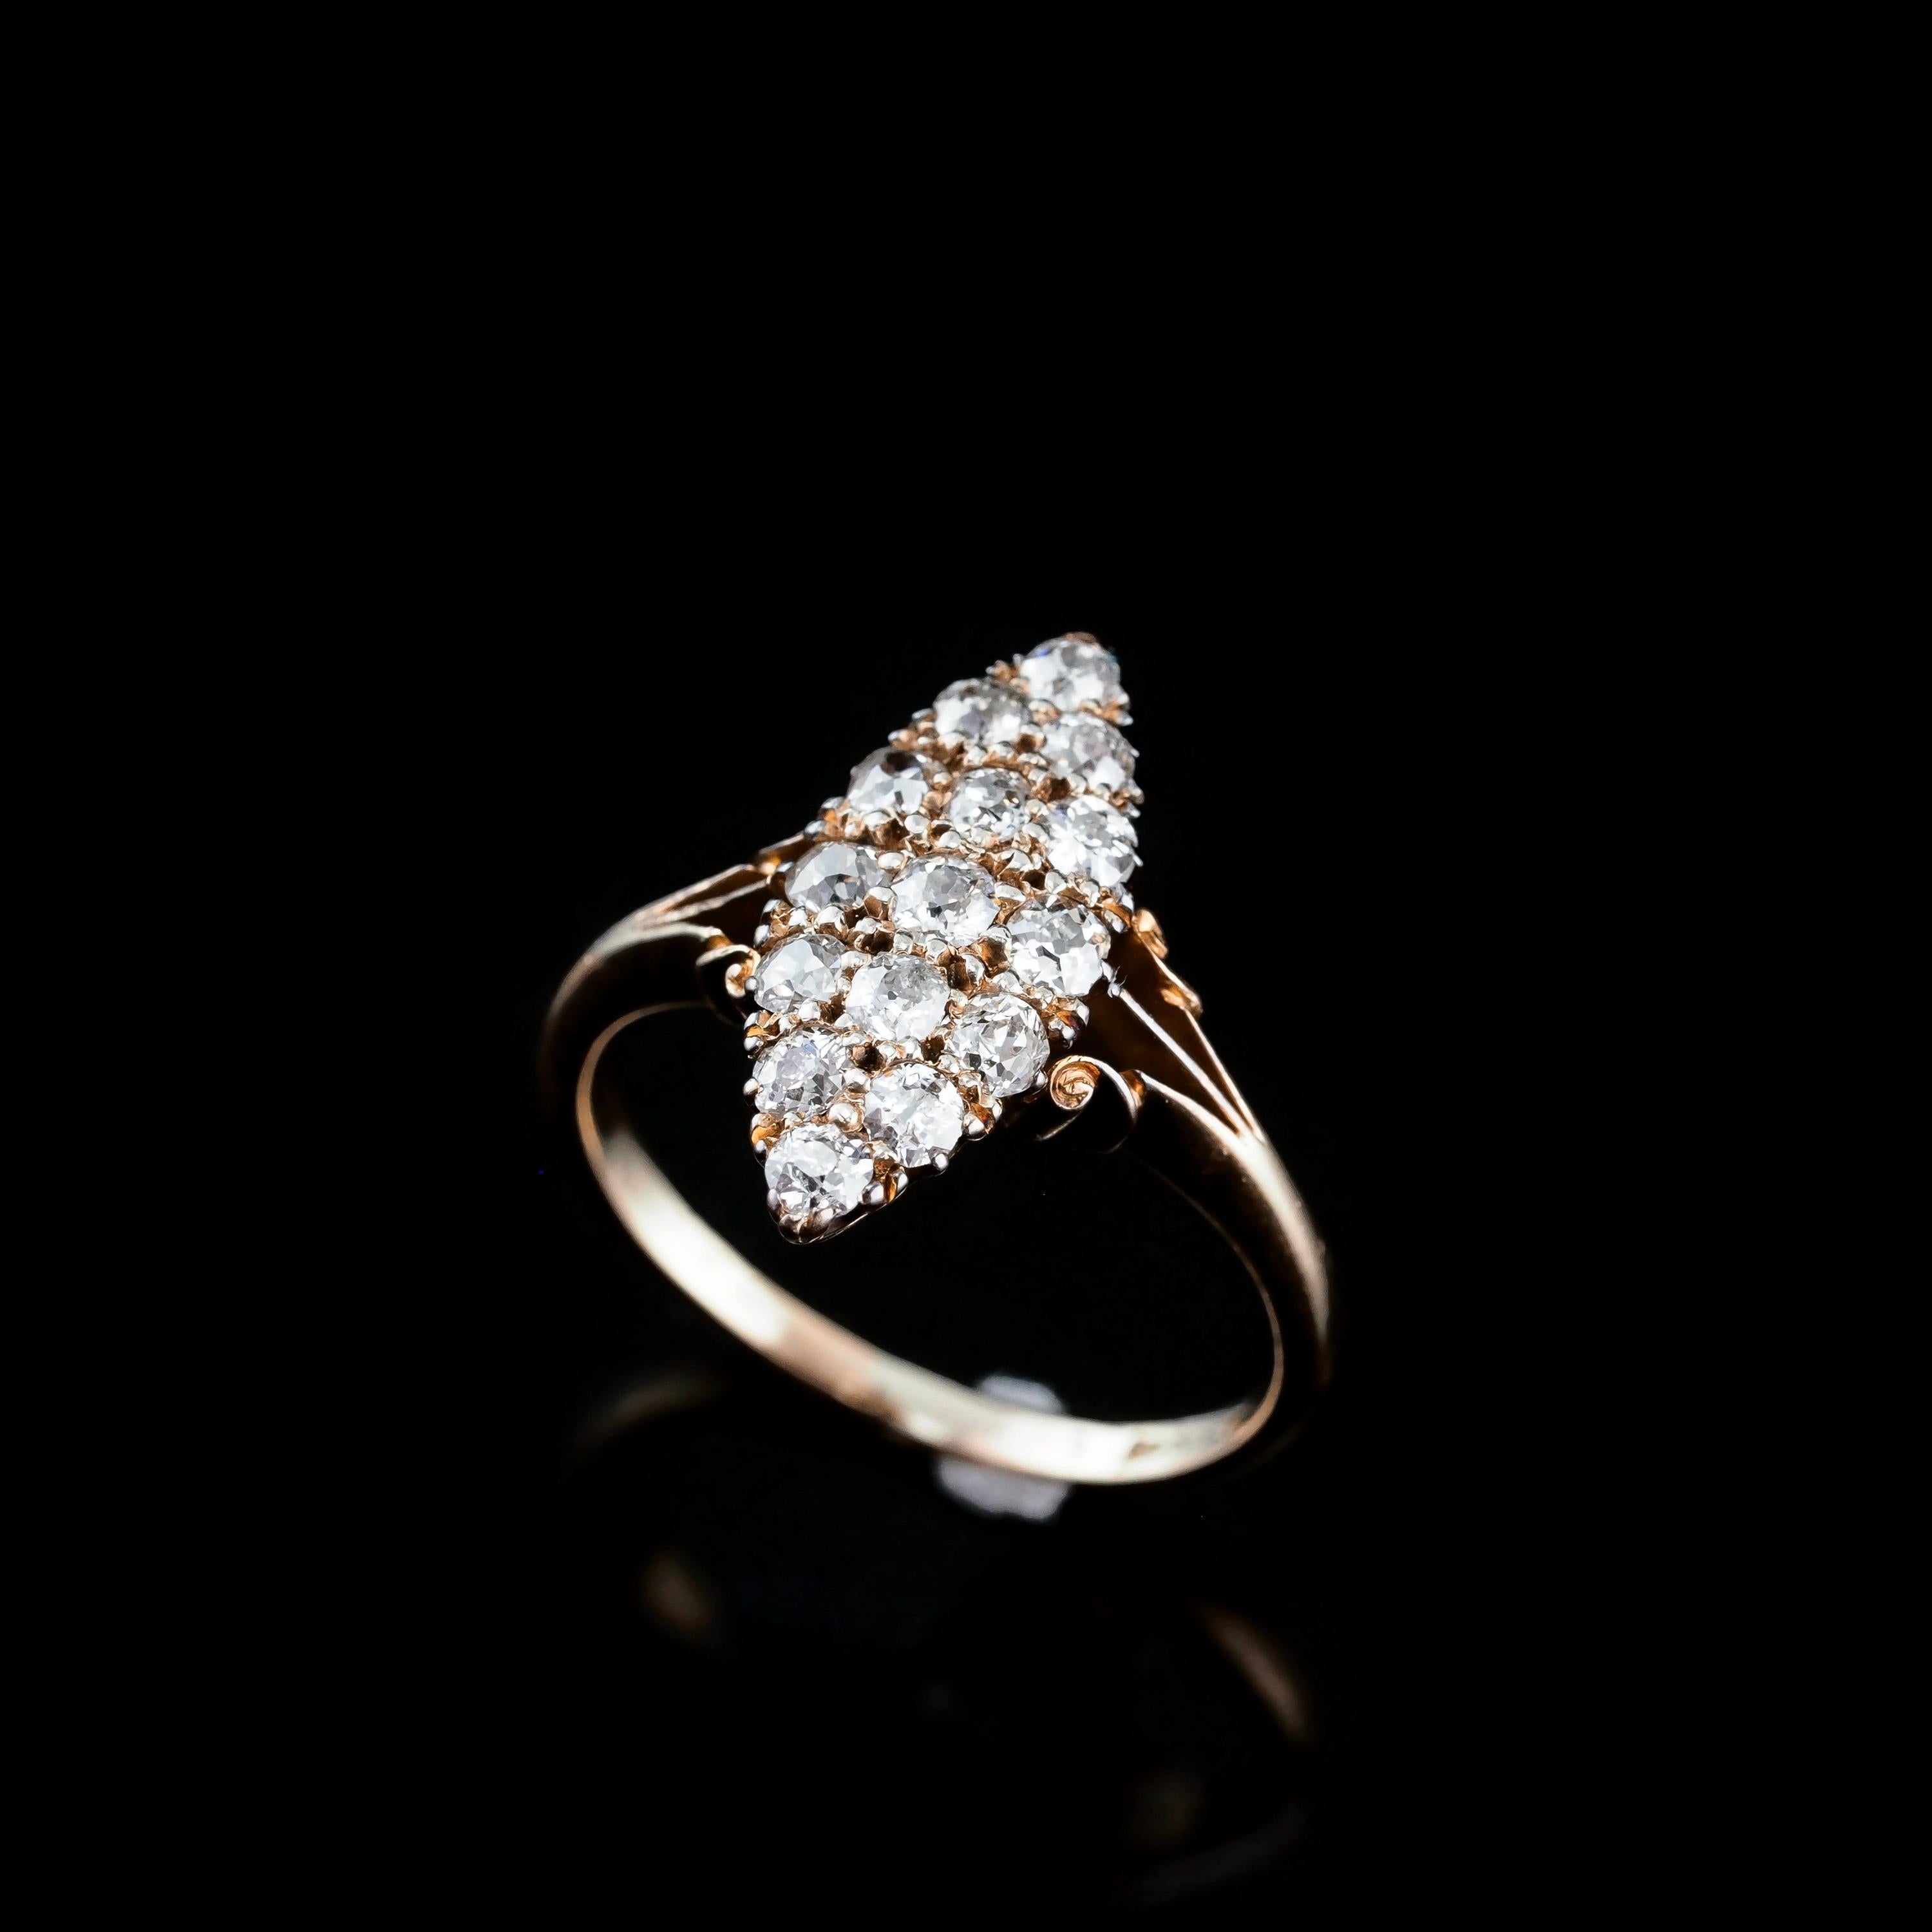 Women's or Men's Antique Diamond Ring 18K Gold Navette/Cluster Design - c.1900s For Sale